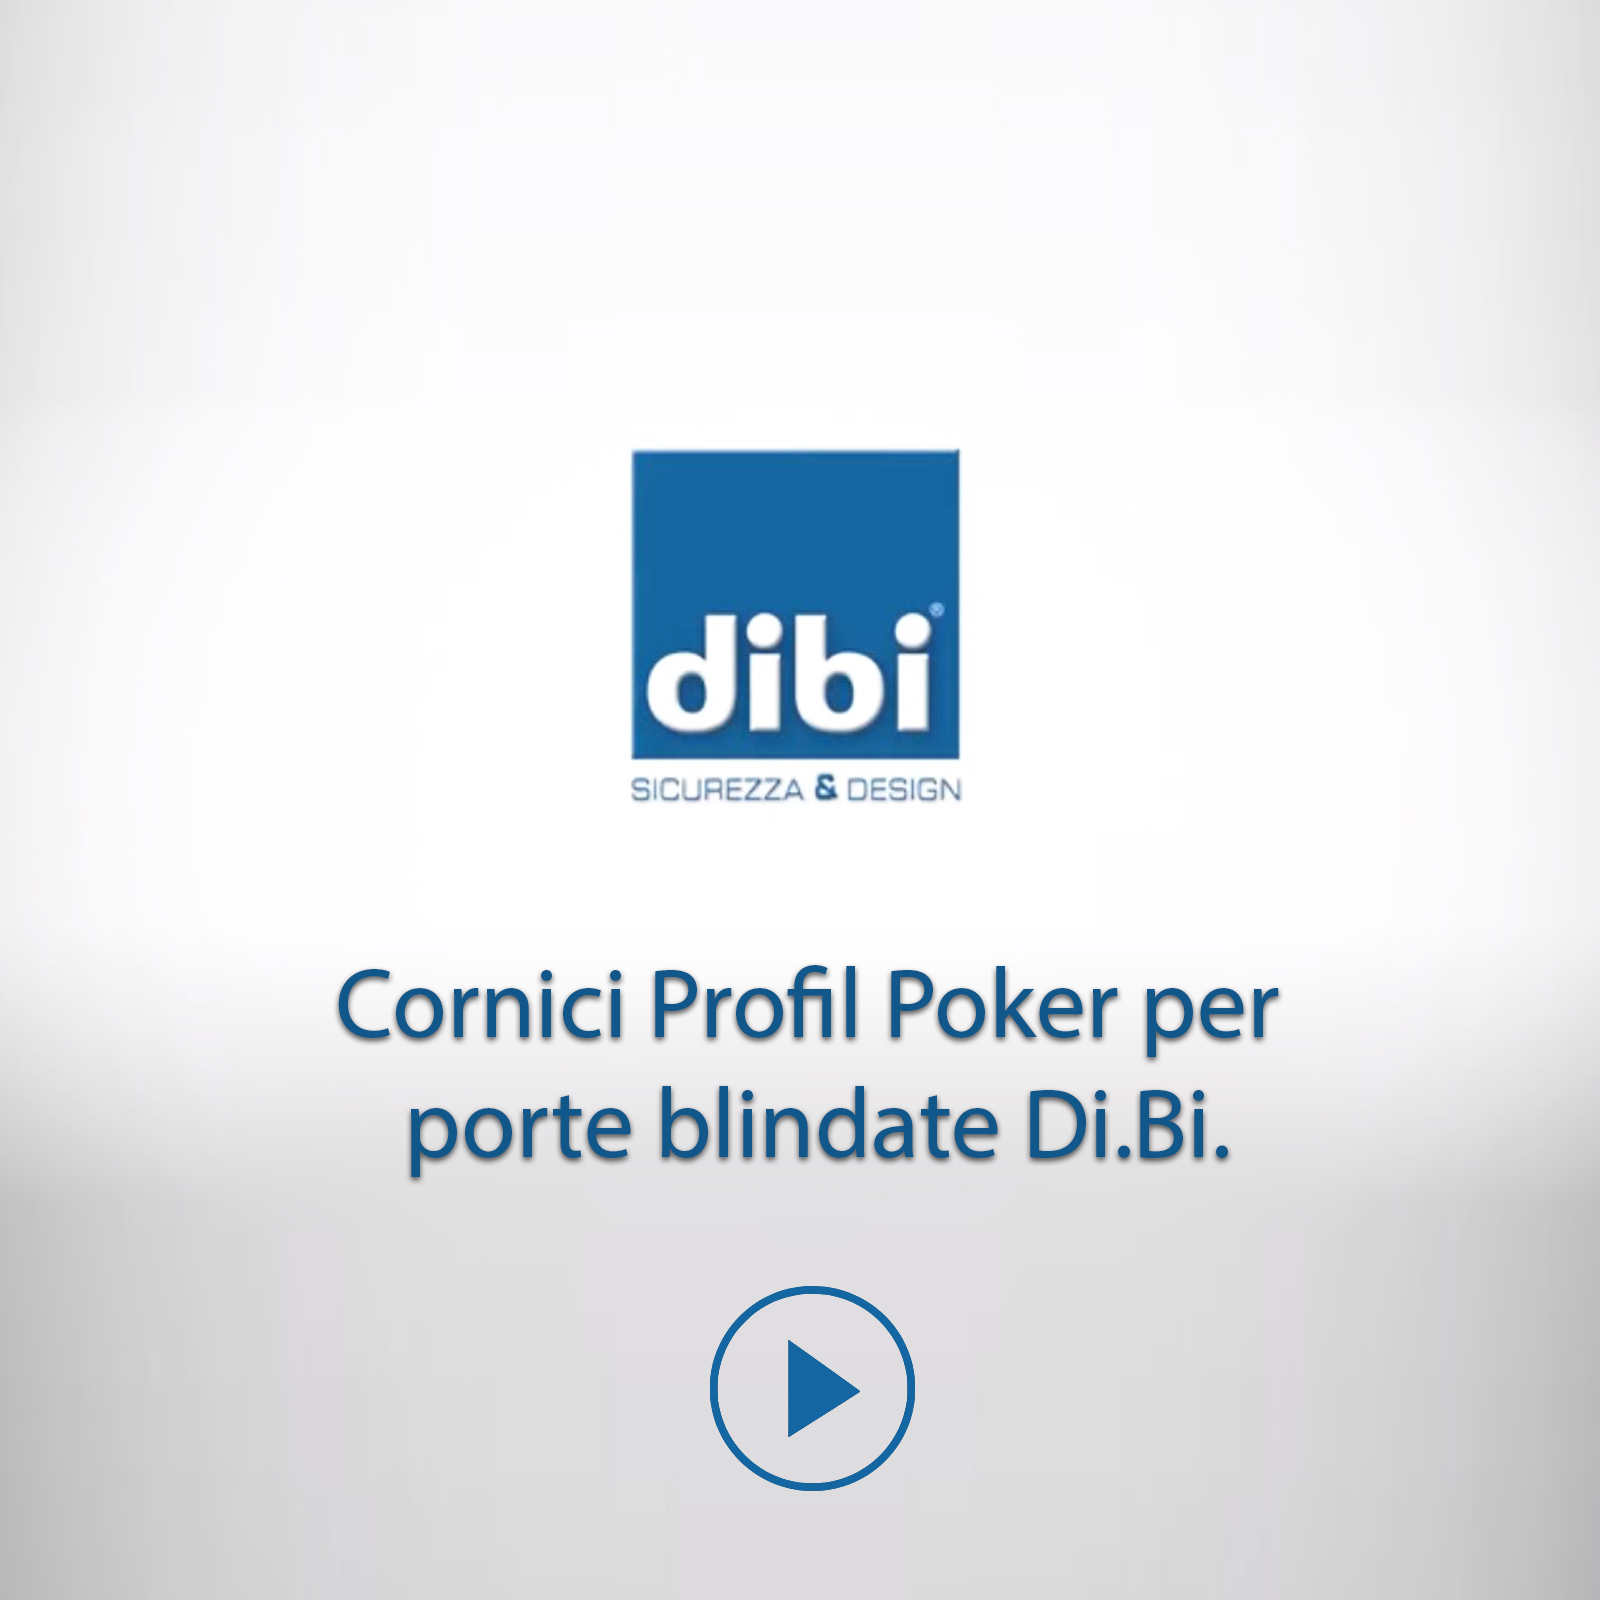 Cornici Profil Poker per porte blindate Di.Bi.